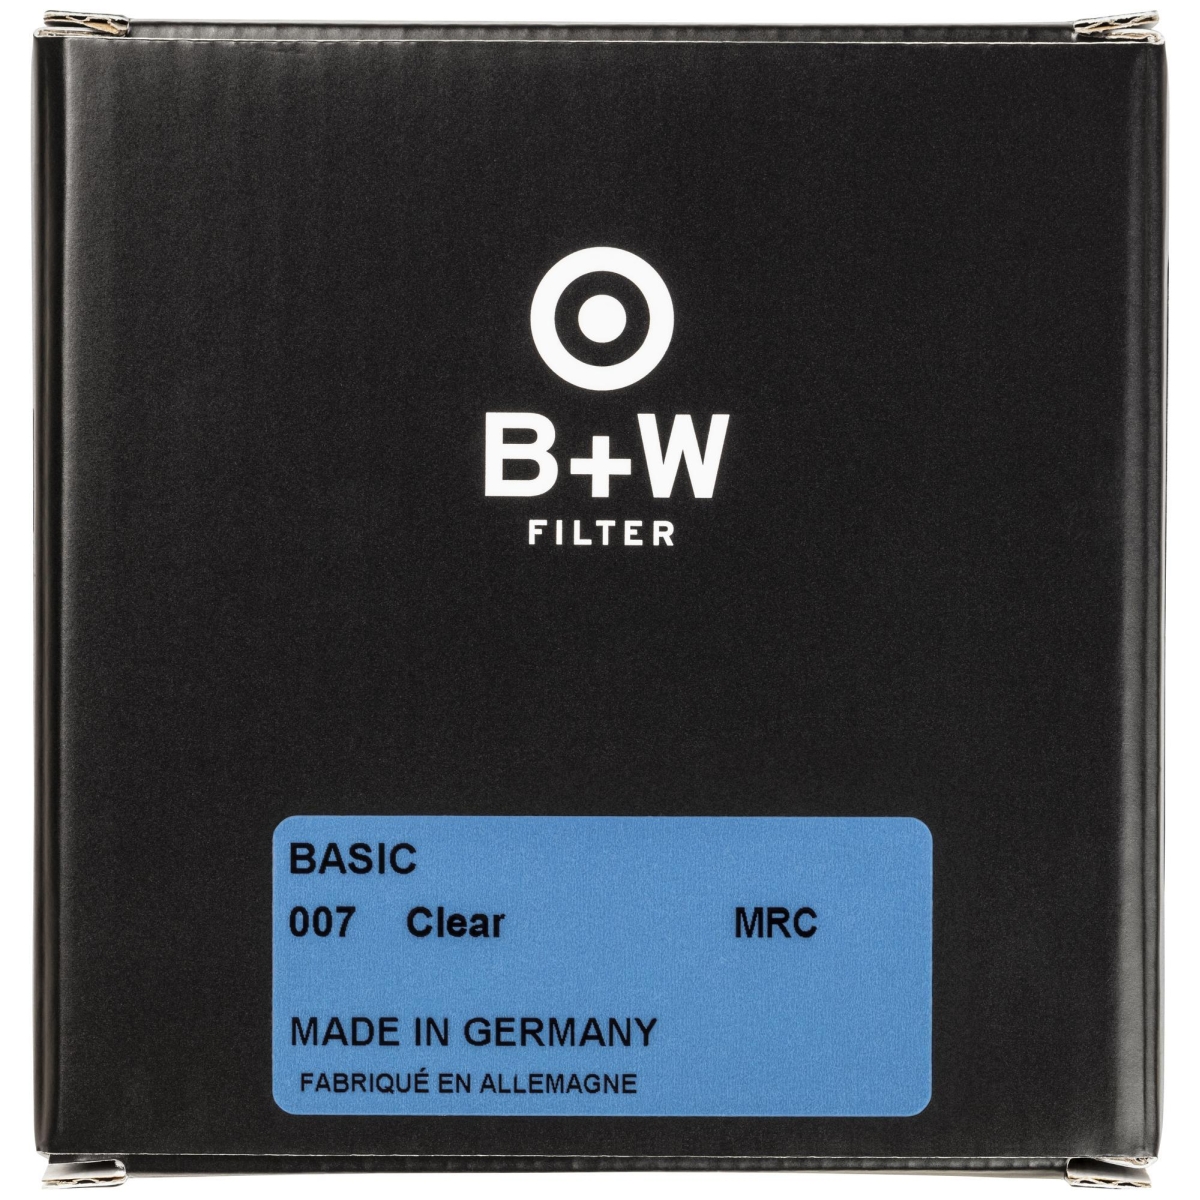 B+W Clear Filter 95 mm MRC Basic